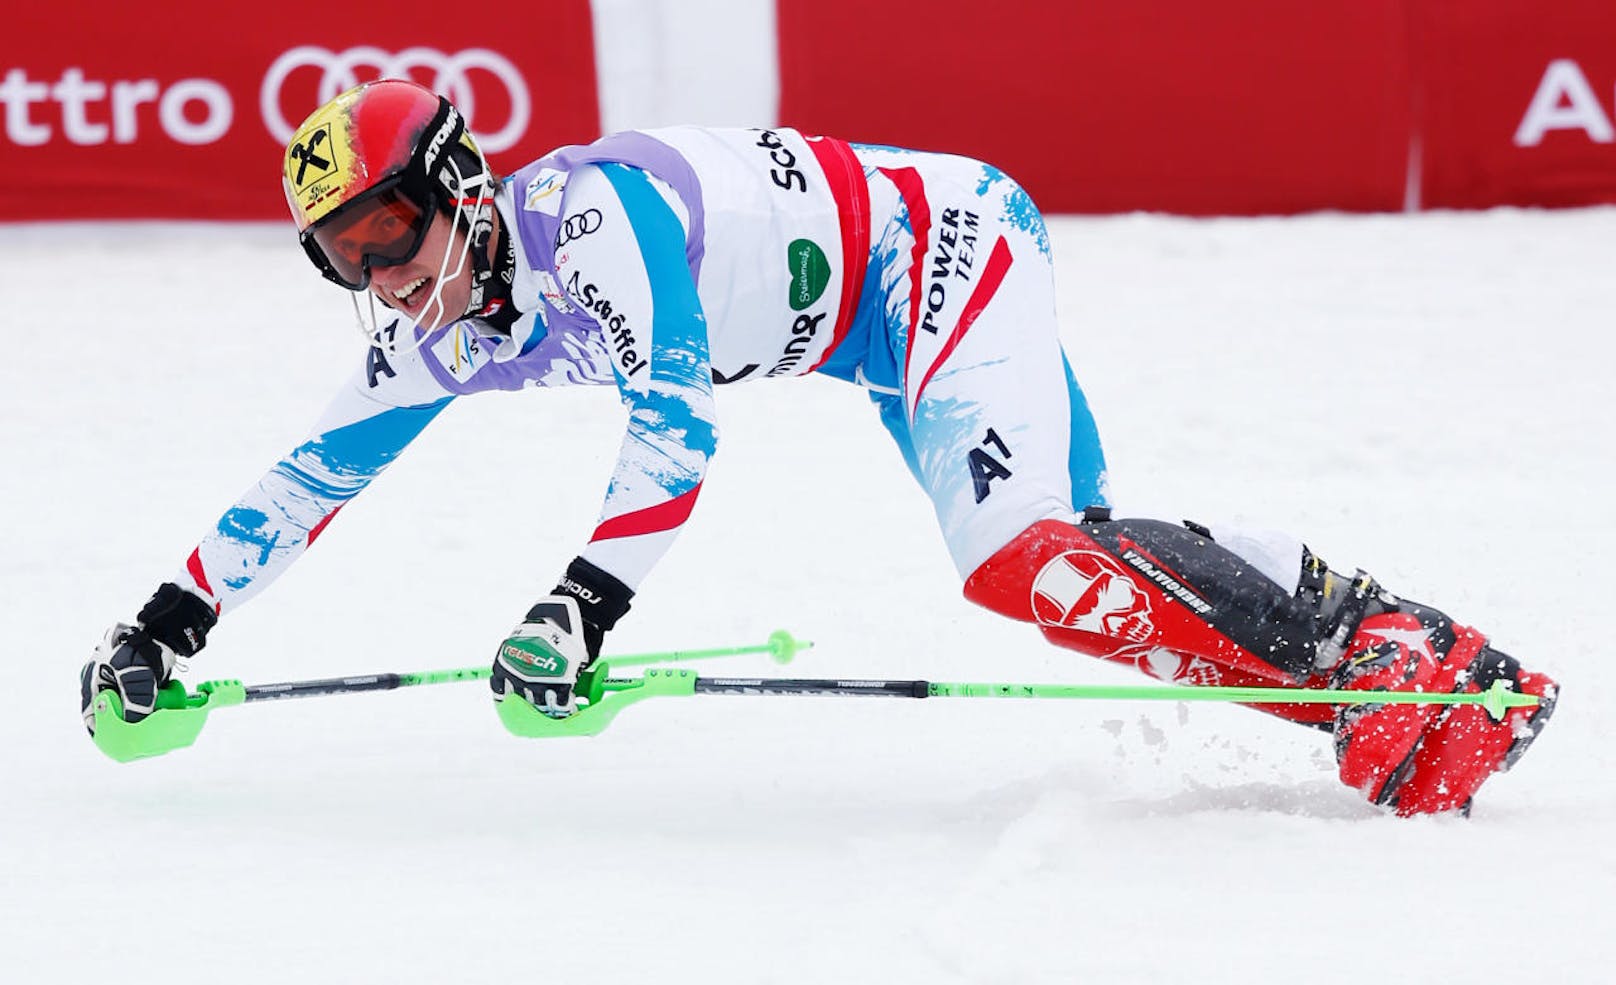 Dieses Bild ging um die Welt: Marcel Hirscher ist am Ziel seiner Träume. Bei der WM in Schladming 2013 holt der Salzburger seine erste Einzel-Goldene im Slalom.